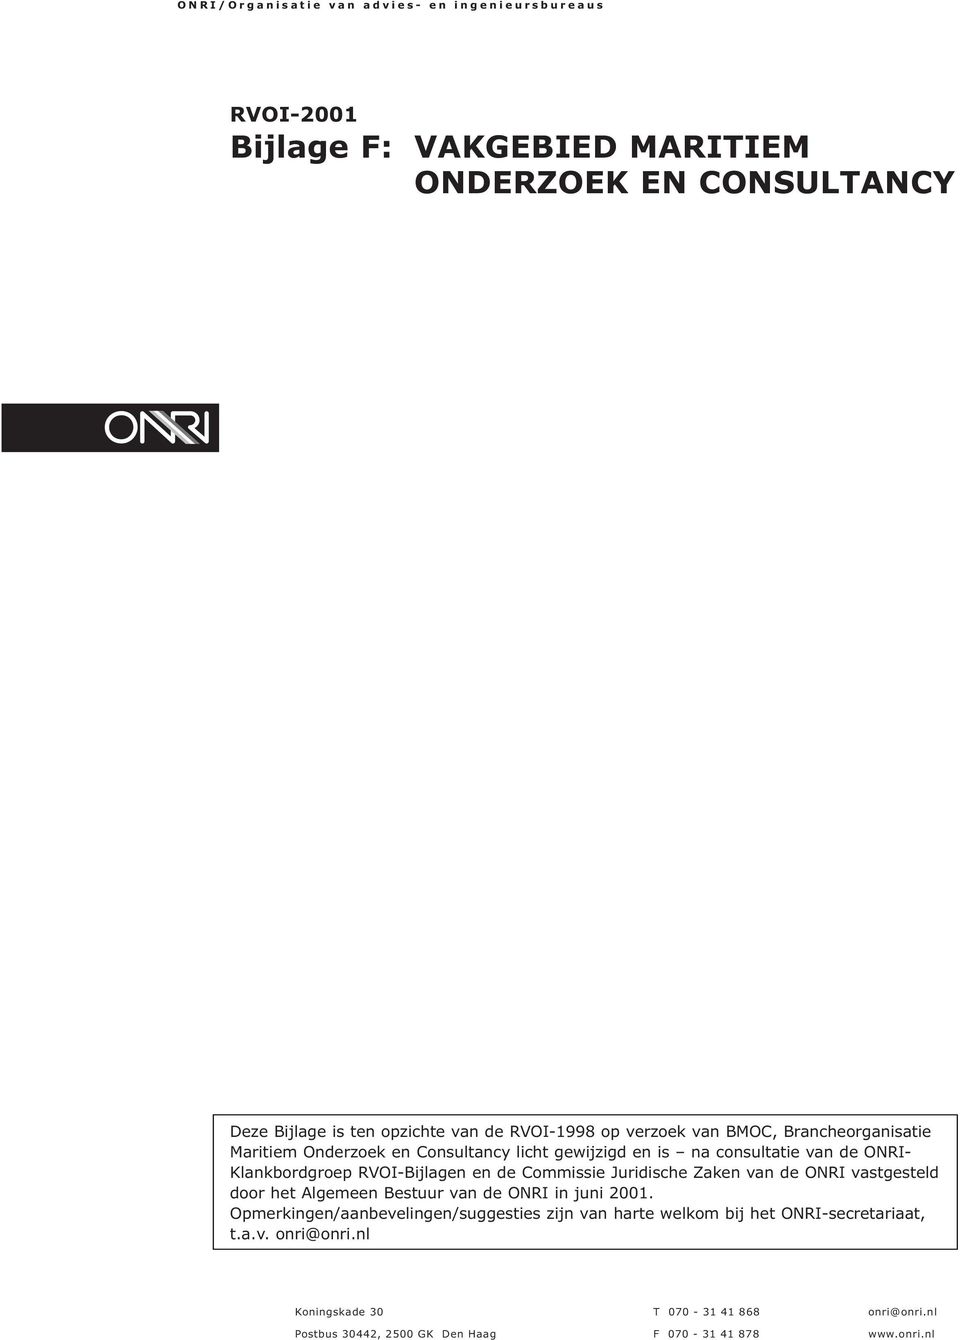 Commissie Juridische Zaken van de ONRI vastgesteld door het Algemeen Bestuur van de ONRI in juni 2001.